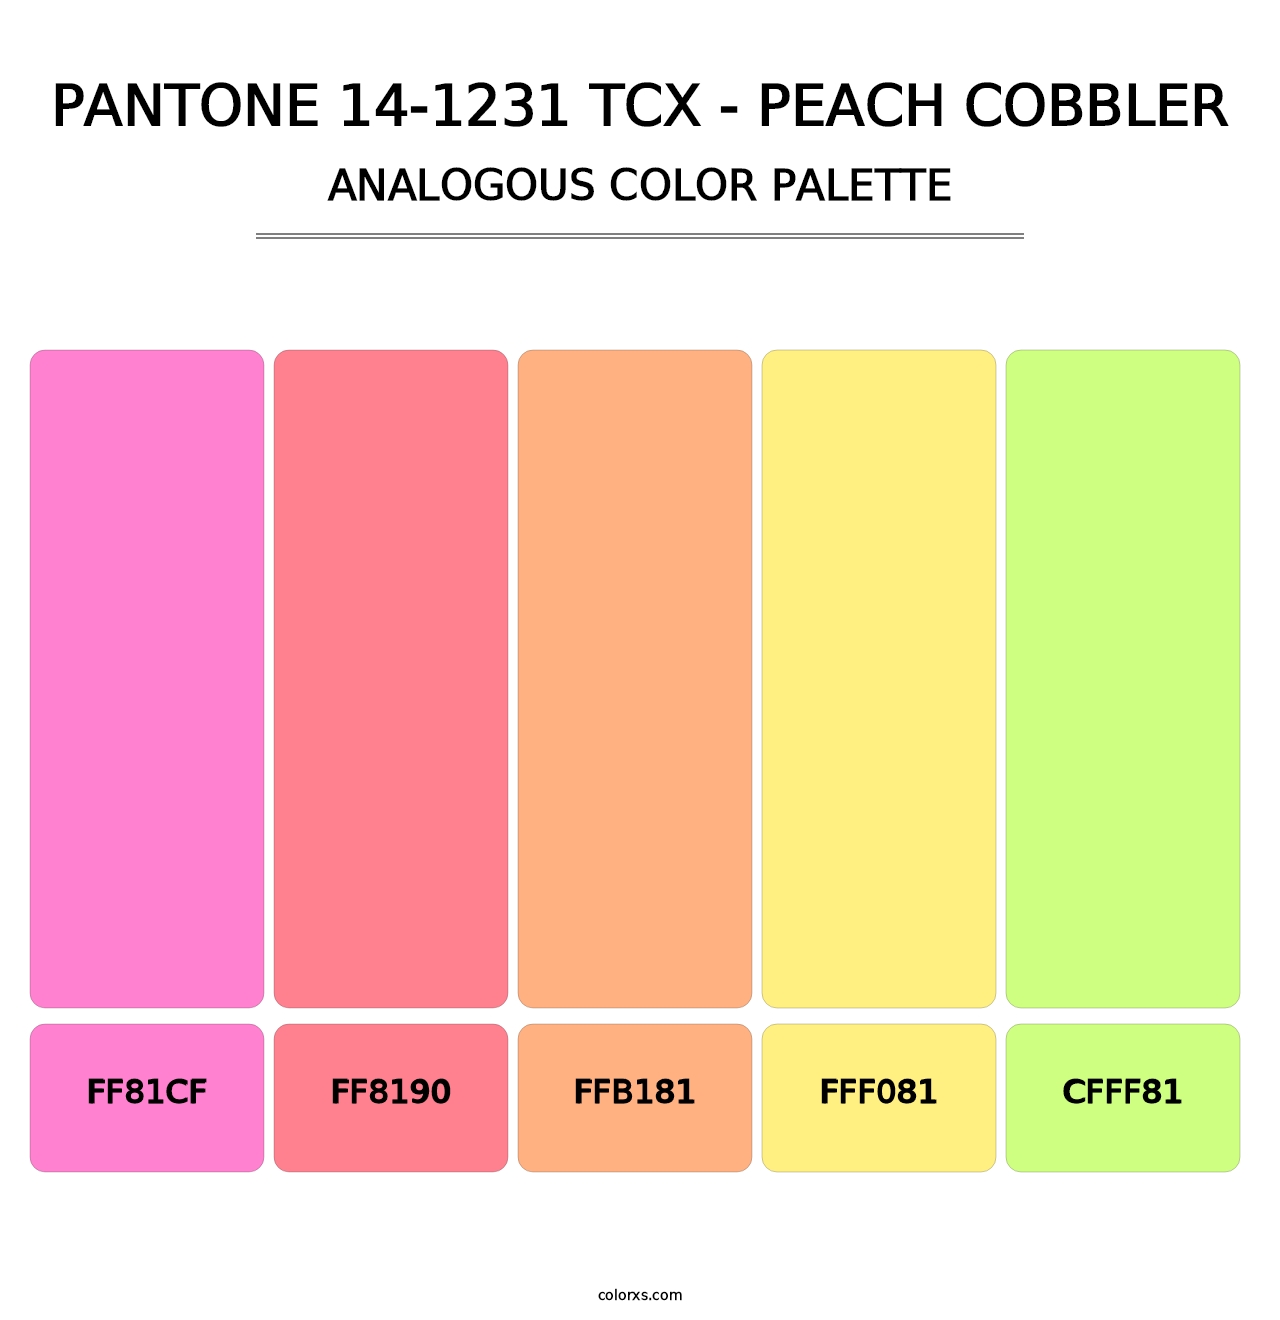 PANTONE 14-1231 TCX - Peach Cobbler - Analogous Color Palette